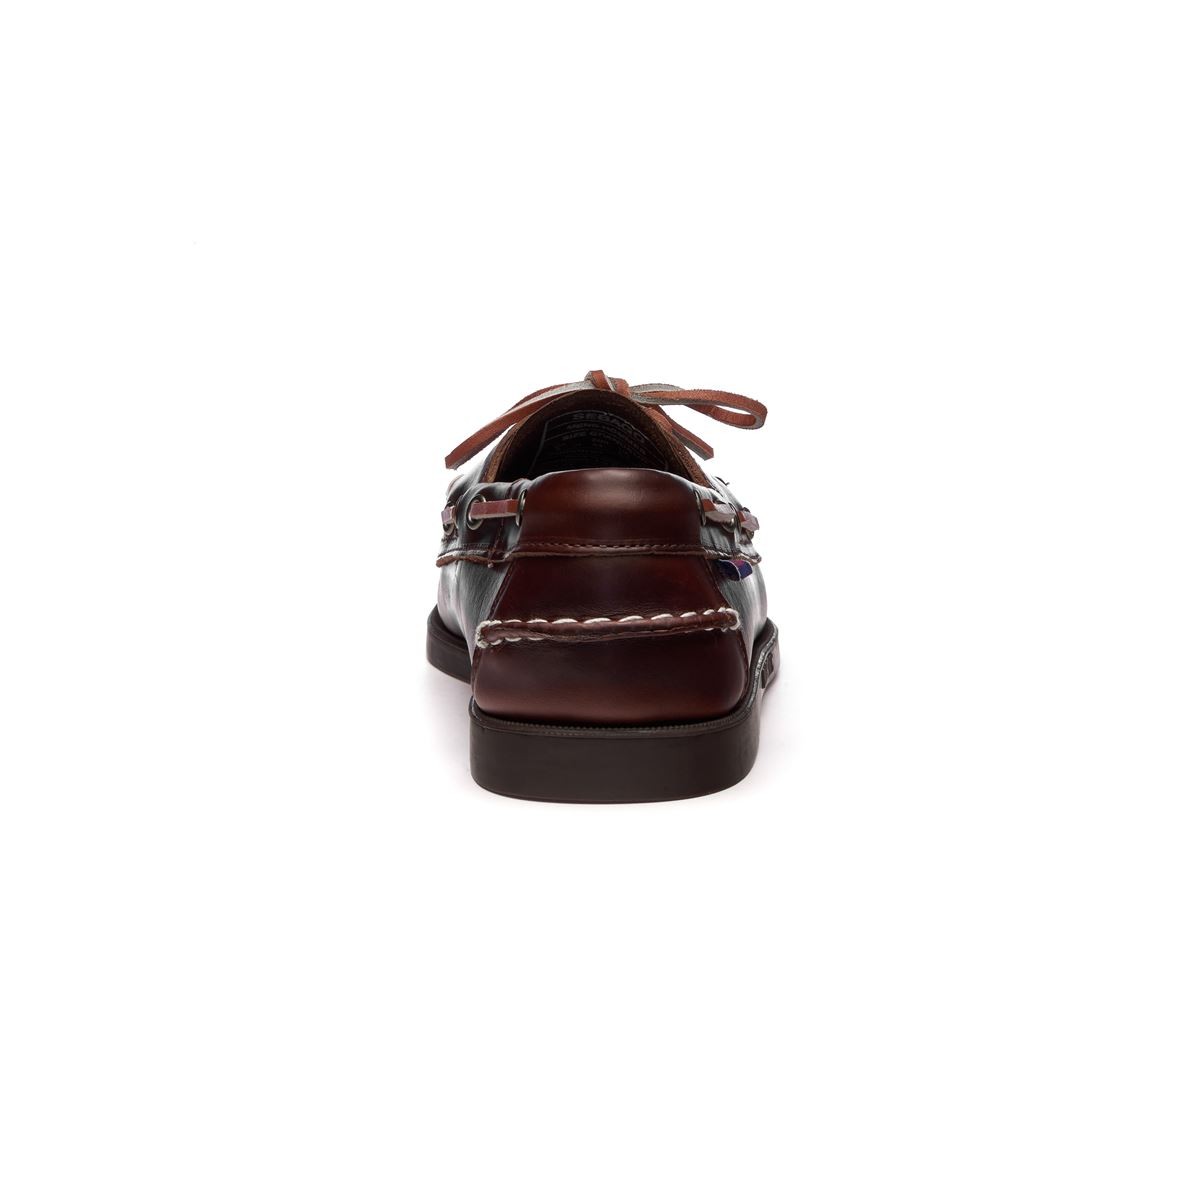 Bateau/Docksides marron Portland Waxed 925r cuir lisse victory - Chaussures Pirotais 